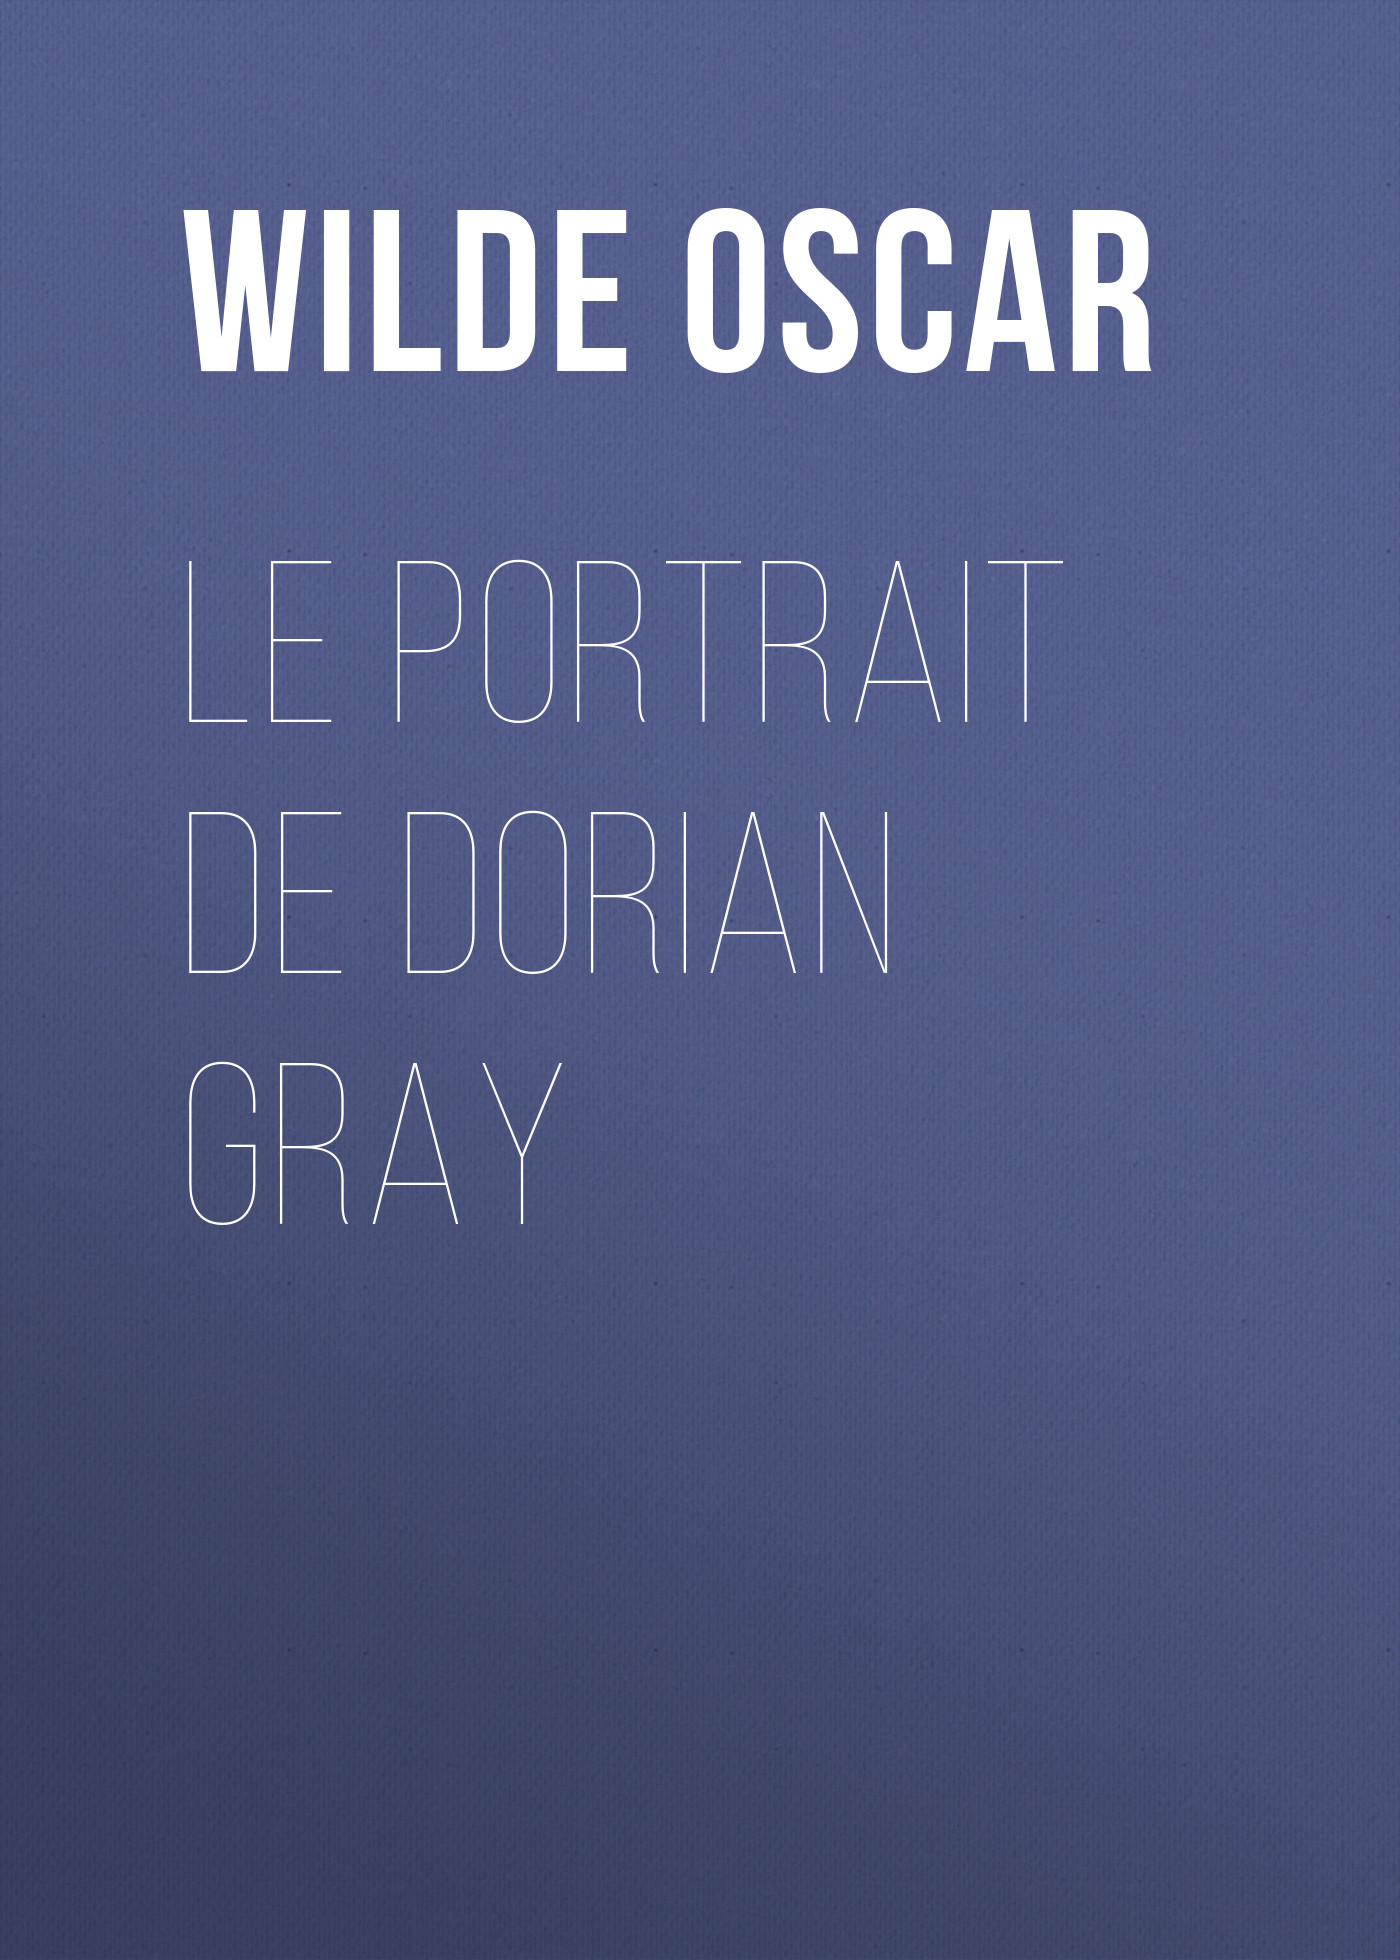 Книга Le portrait de Dorian Gray из серии , созданная Oscar Wilde, может относится к жанру Литература 19 века, Зарубежная классика. Стоимость электронной книги Le portrait de Dorian Gray с идентификатором 25559092 составляет 0 руб.